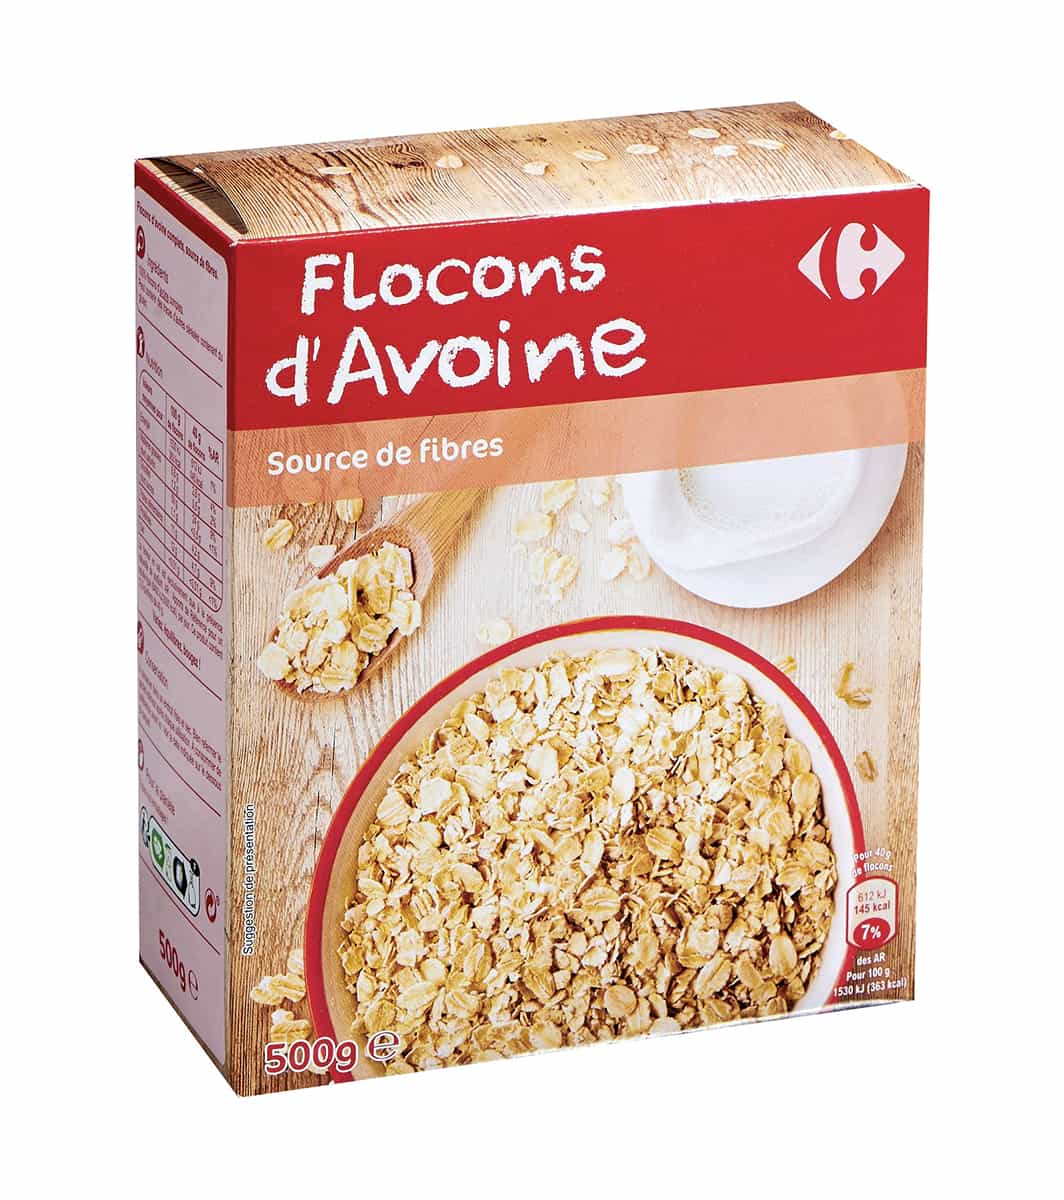 Flocons d'avoine 500g - Carrefour Maroc